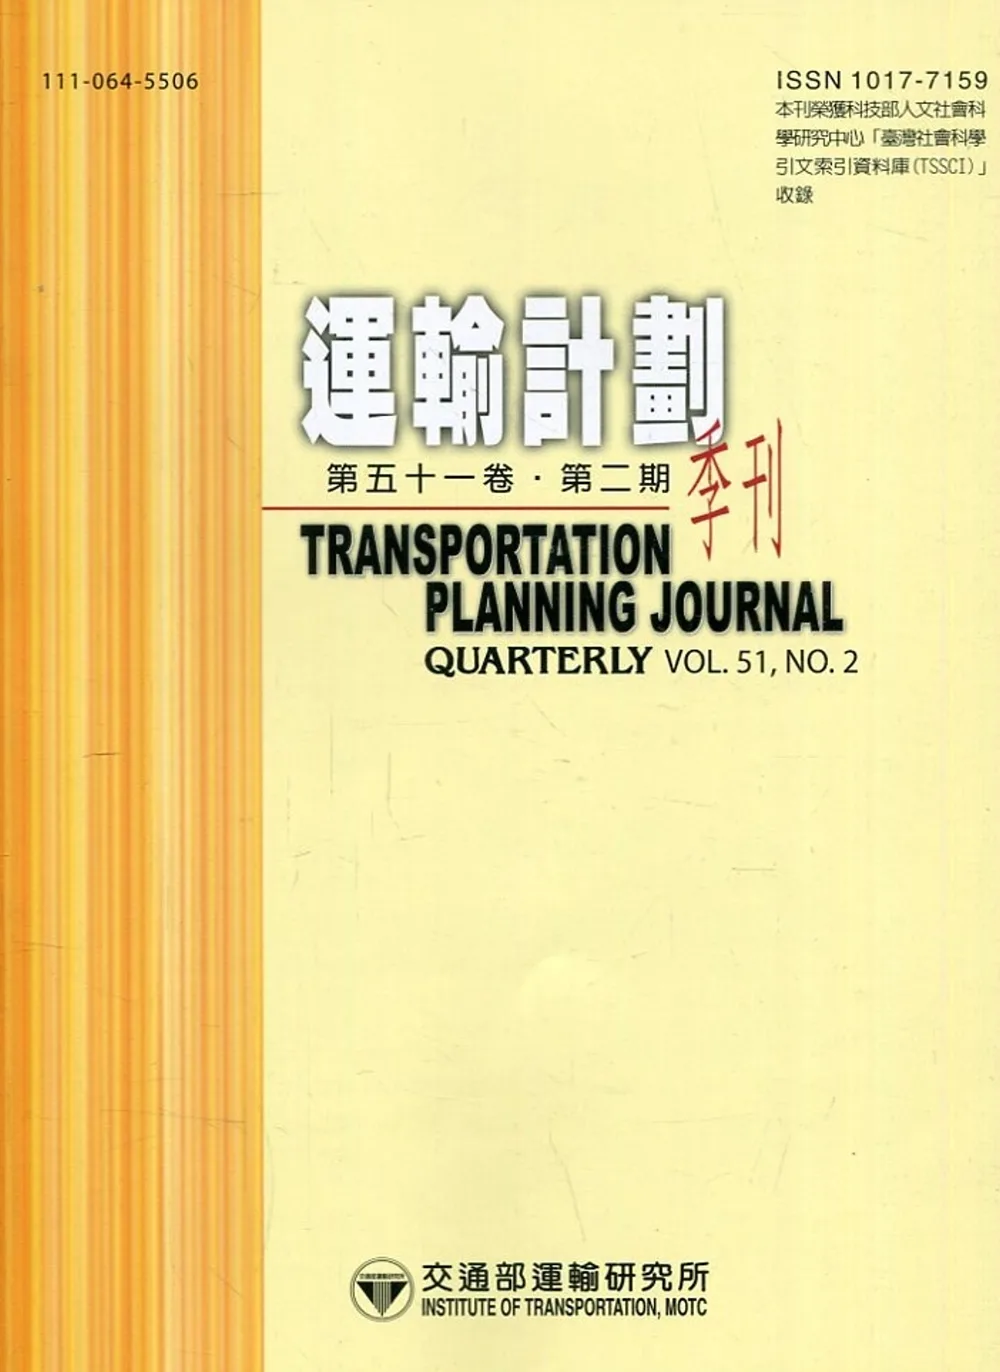 運輸計劃季刊51卷2期(111/06):基於事件隨機性考量之國道緊急應變派遣模式